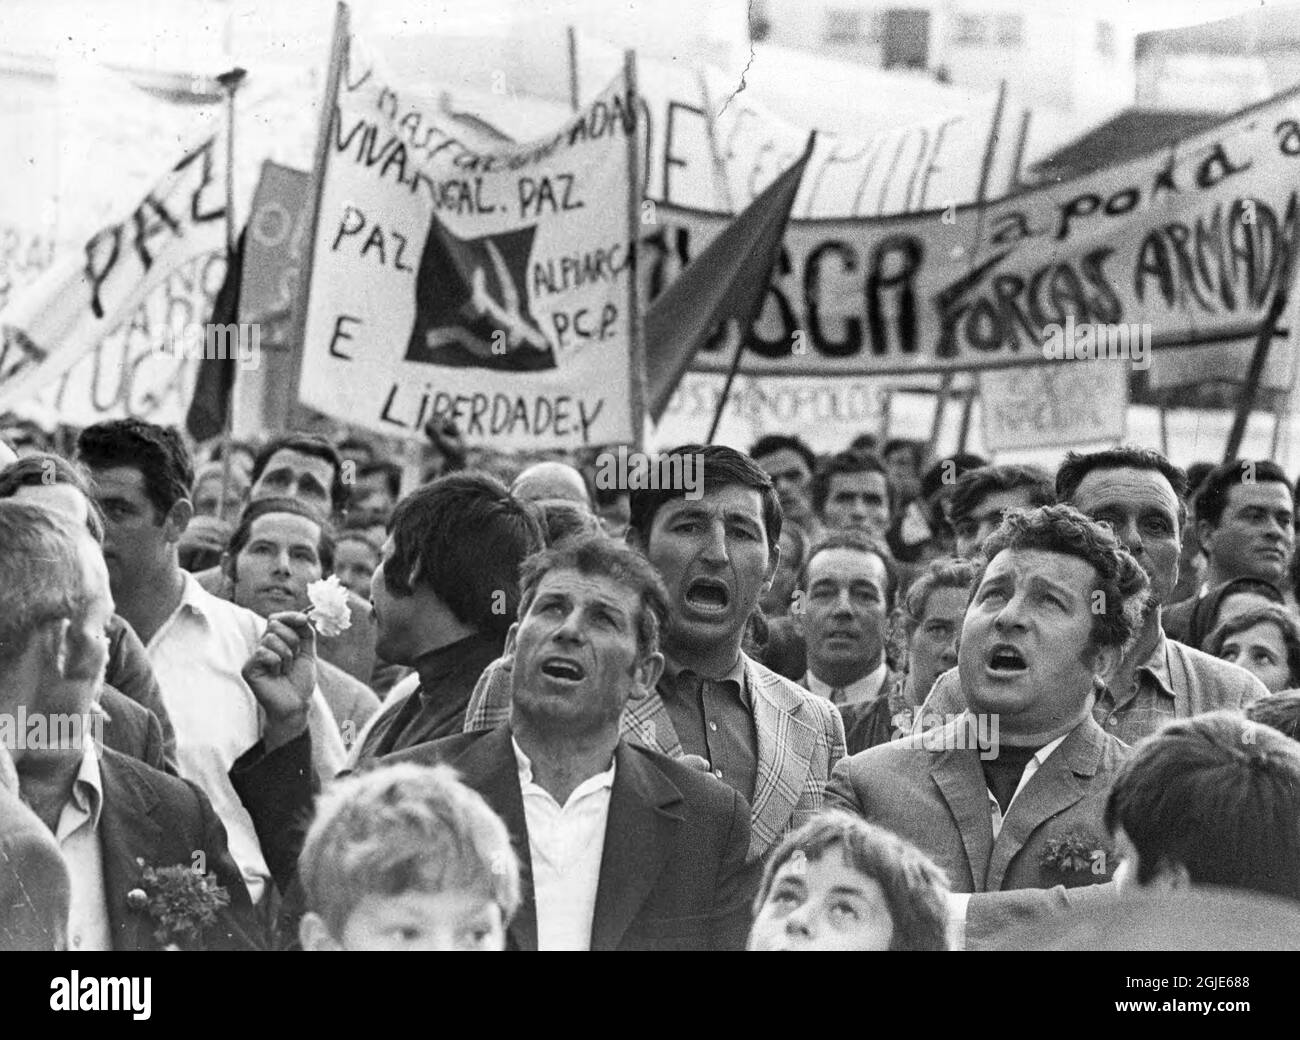 Lisbona 1974-05-08 persone si sono radunate a Lisbona, il 08 maggio 1974, portando manifesti e bandiere dopo un colpo di stato militare socialista, la cosiddetta rivoluzione del garofano in Portogallo. Foto: Sven-Erik Sjoberg / DN / TT / Codice: 53 Foto Stock